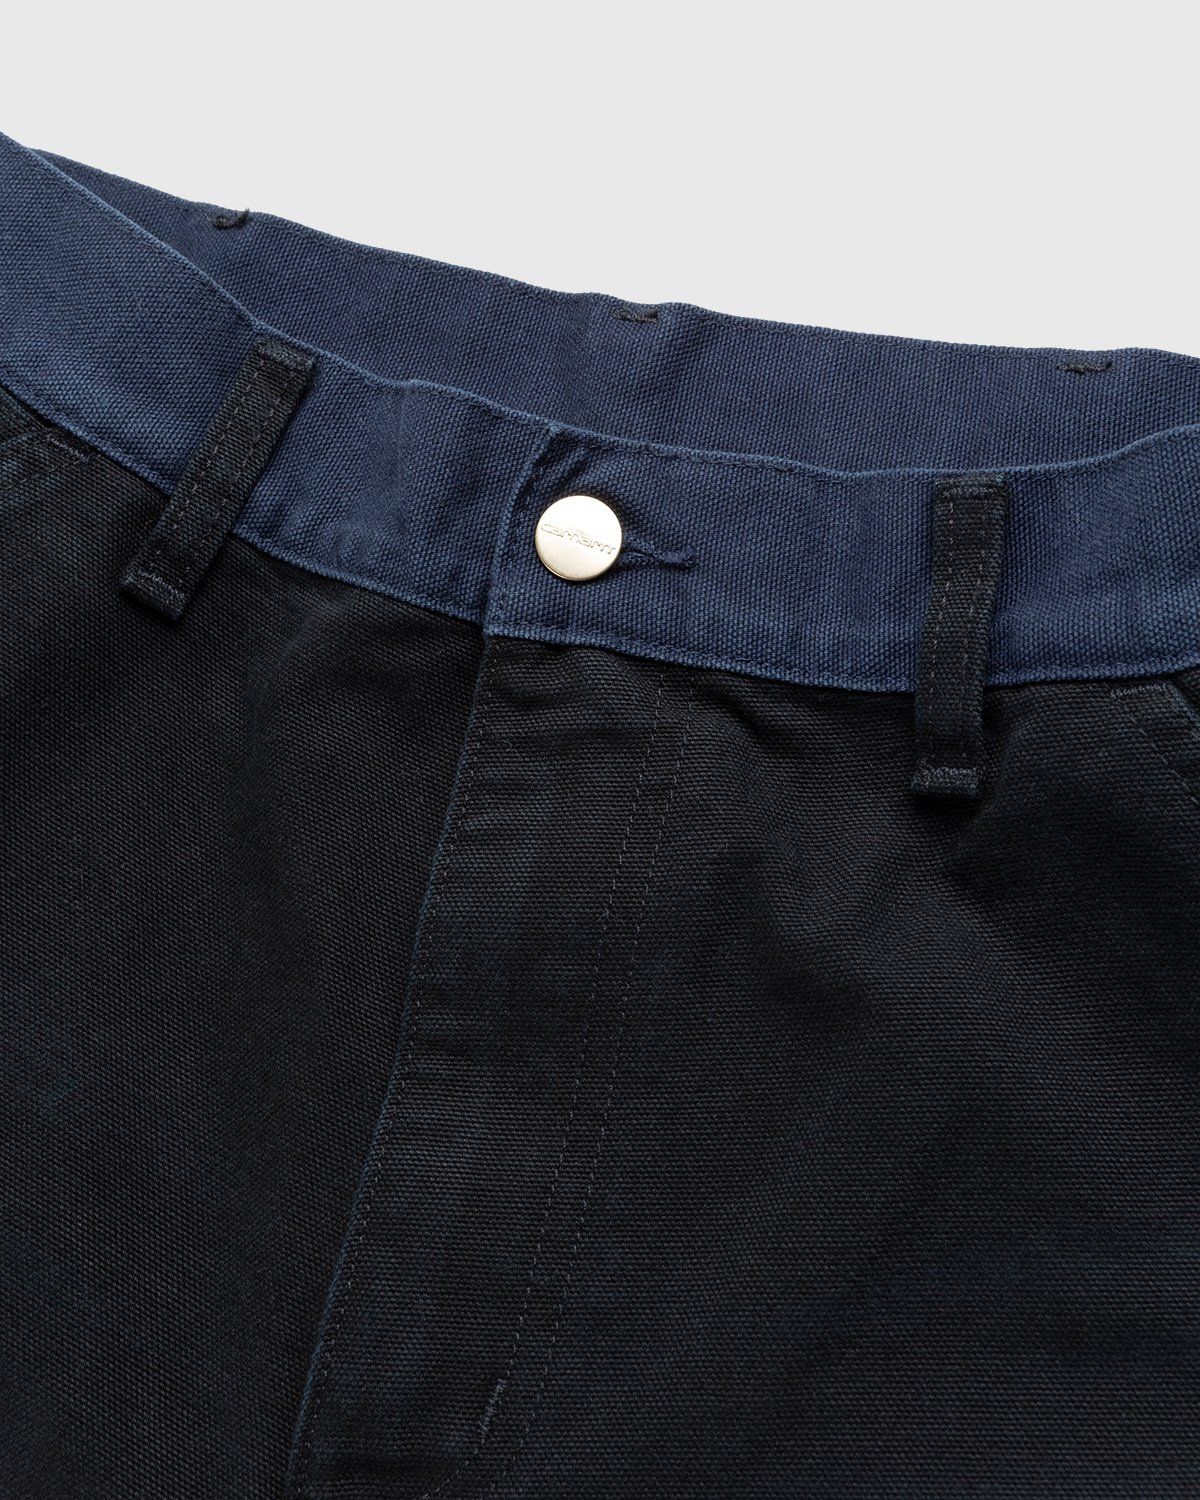 Carhartt WIP – Double Knee Pant Dark Navy - Work Pants - Blue - Image 4